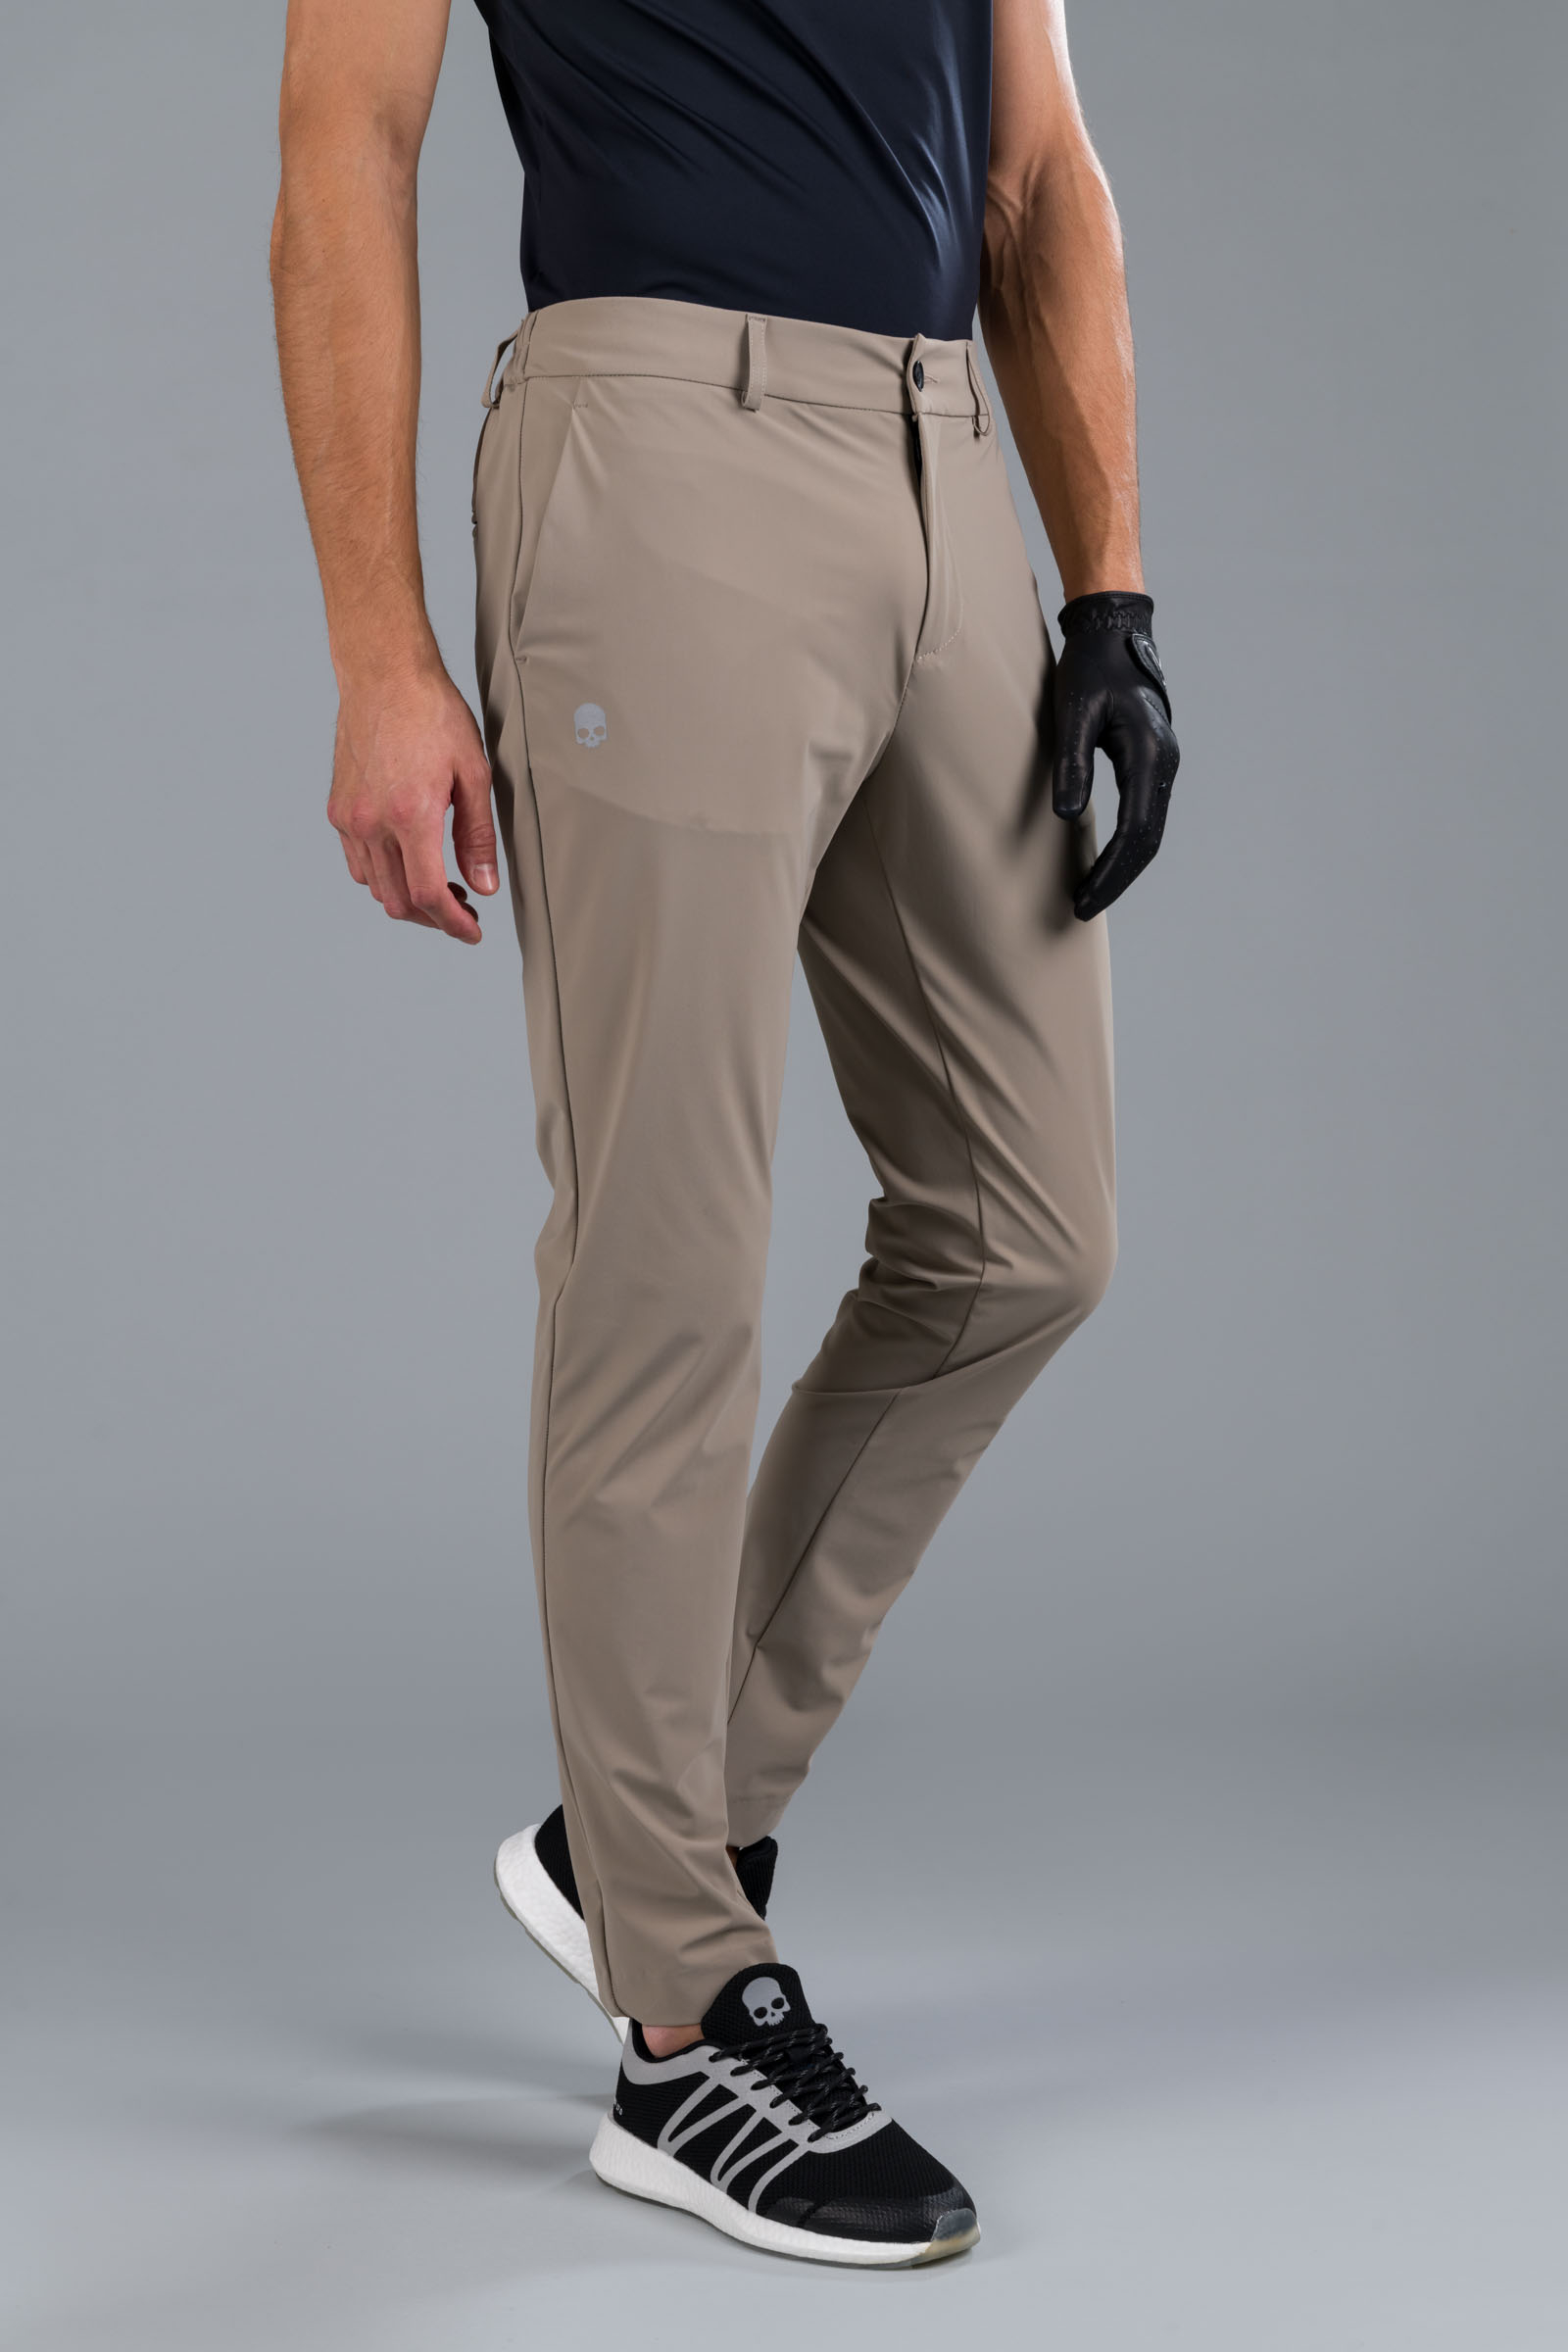 GOLF PANTS - BEIGE - Hydrogen - Luxury Sportwear